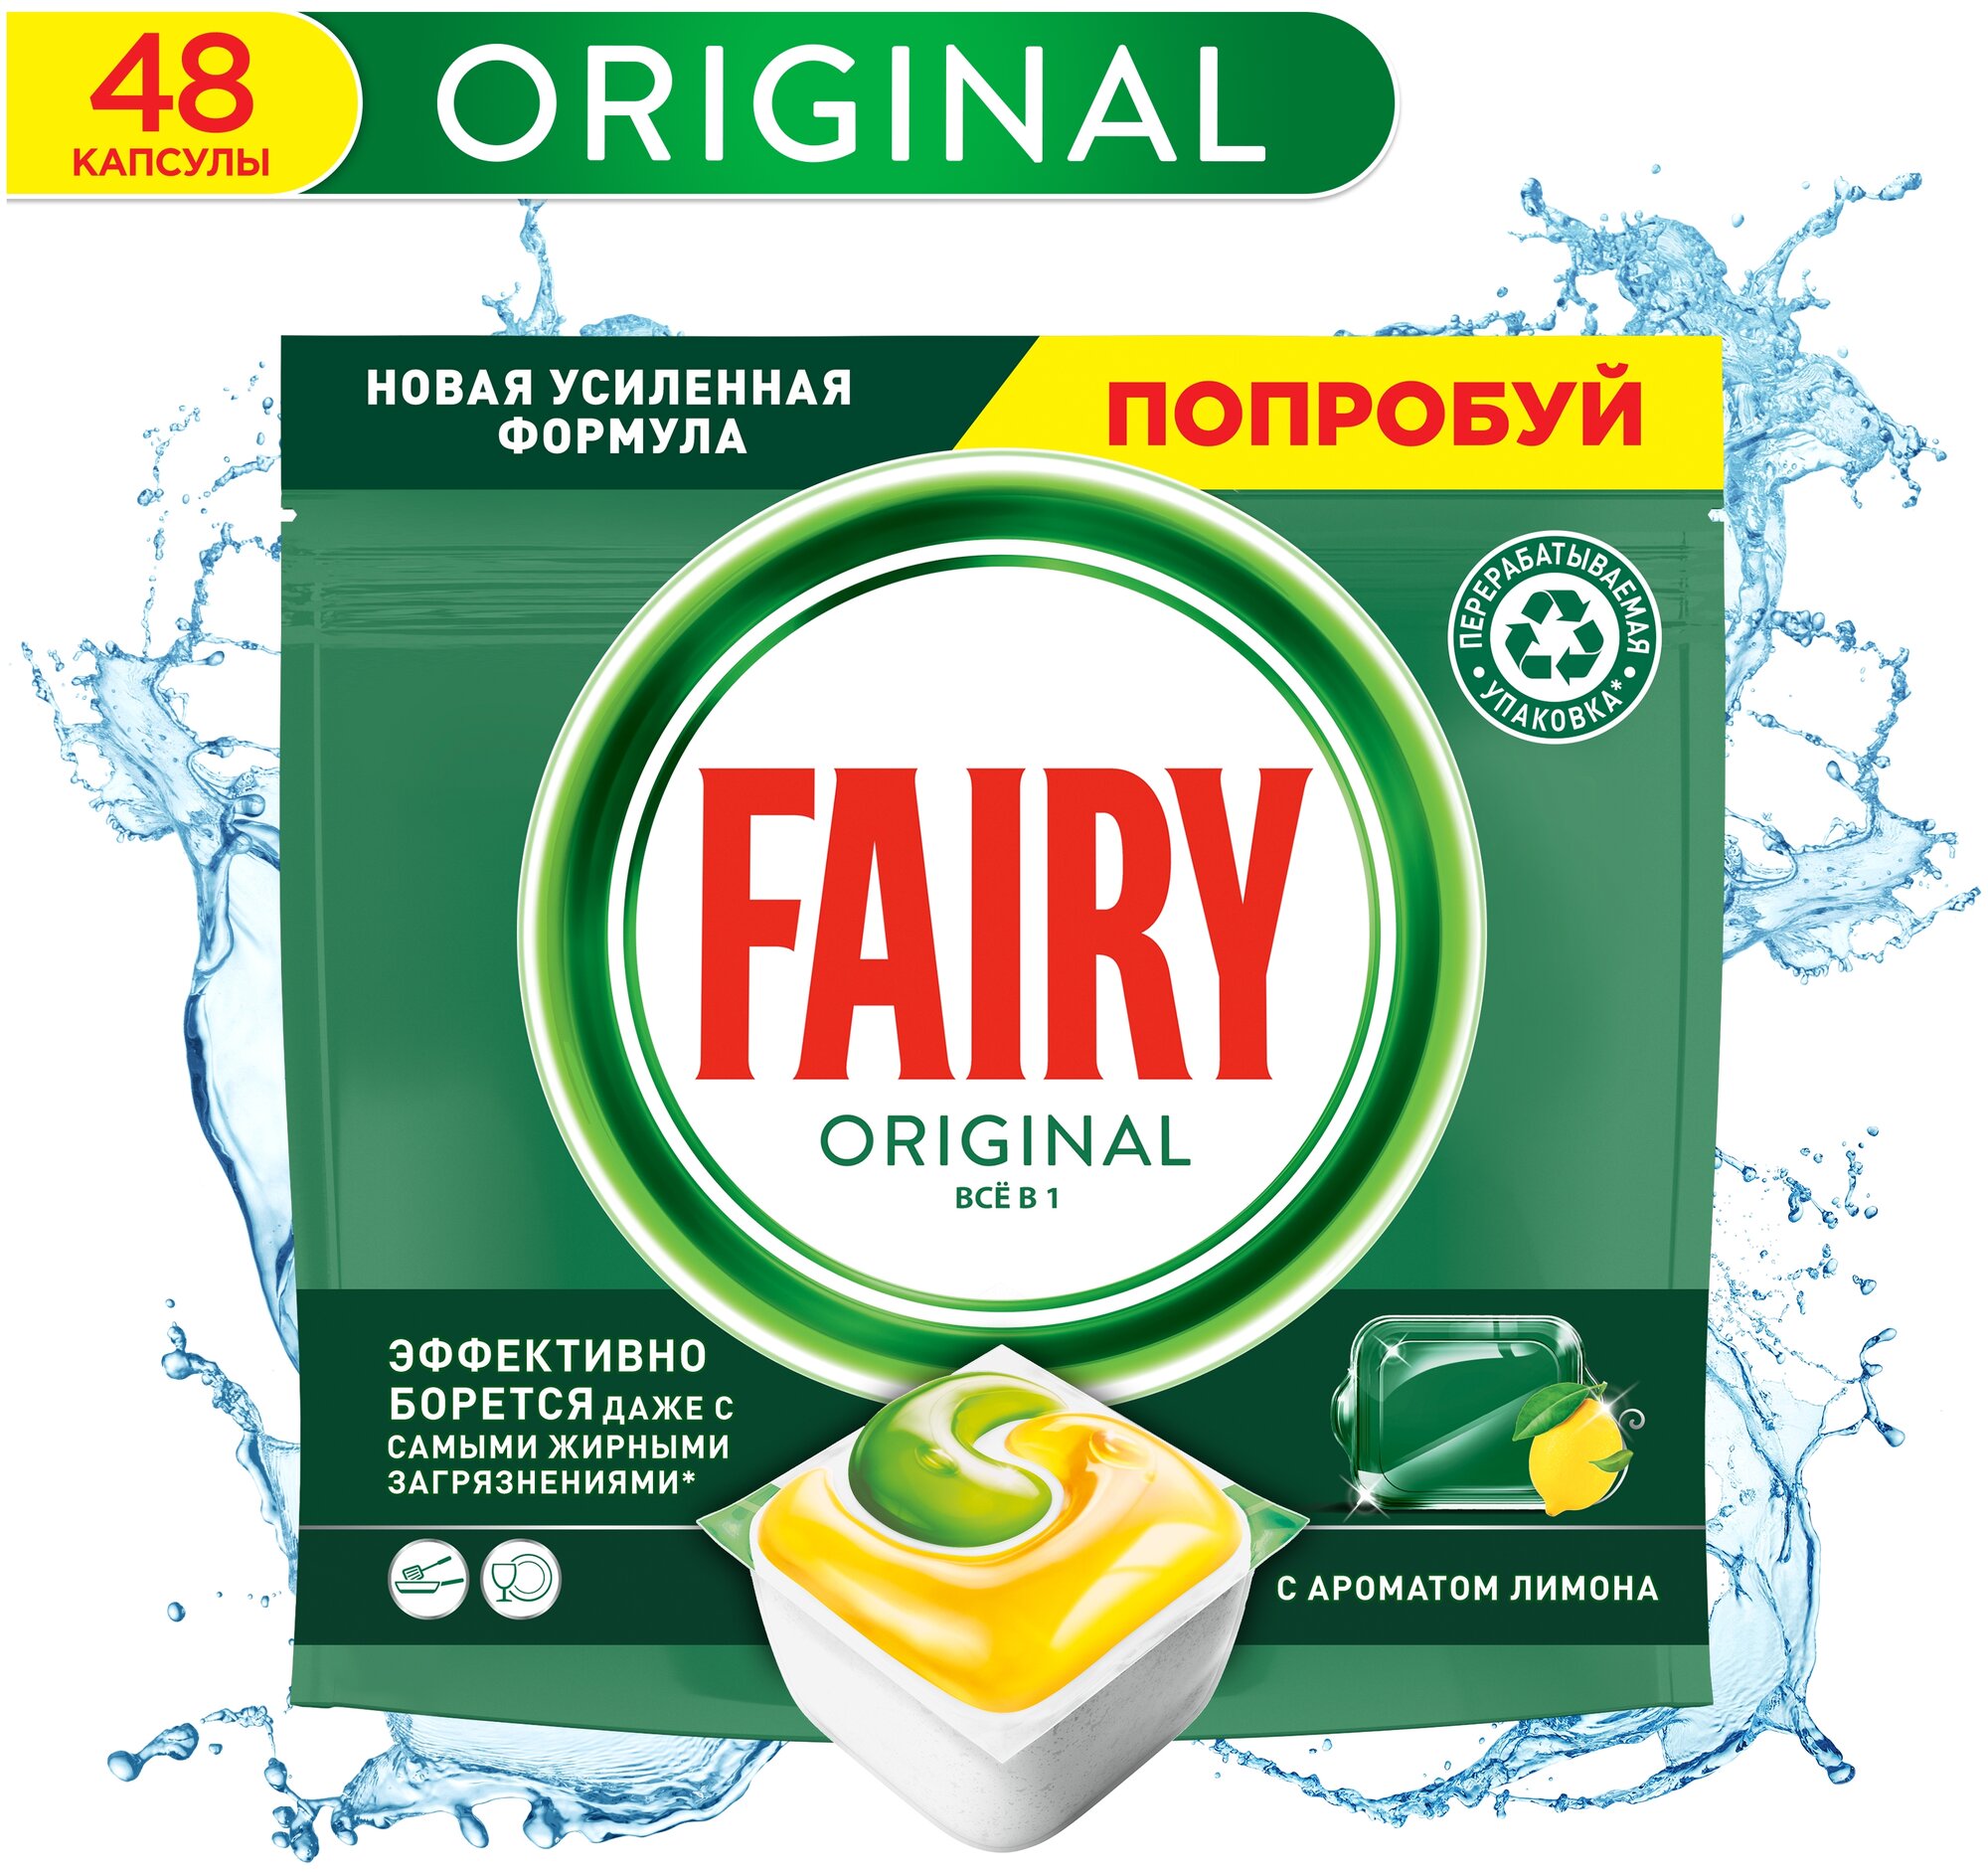 Капсулы для посудомоечной машины Fairy Original All in 1 капсулы (лимон), 48 шт. - фотография № 1